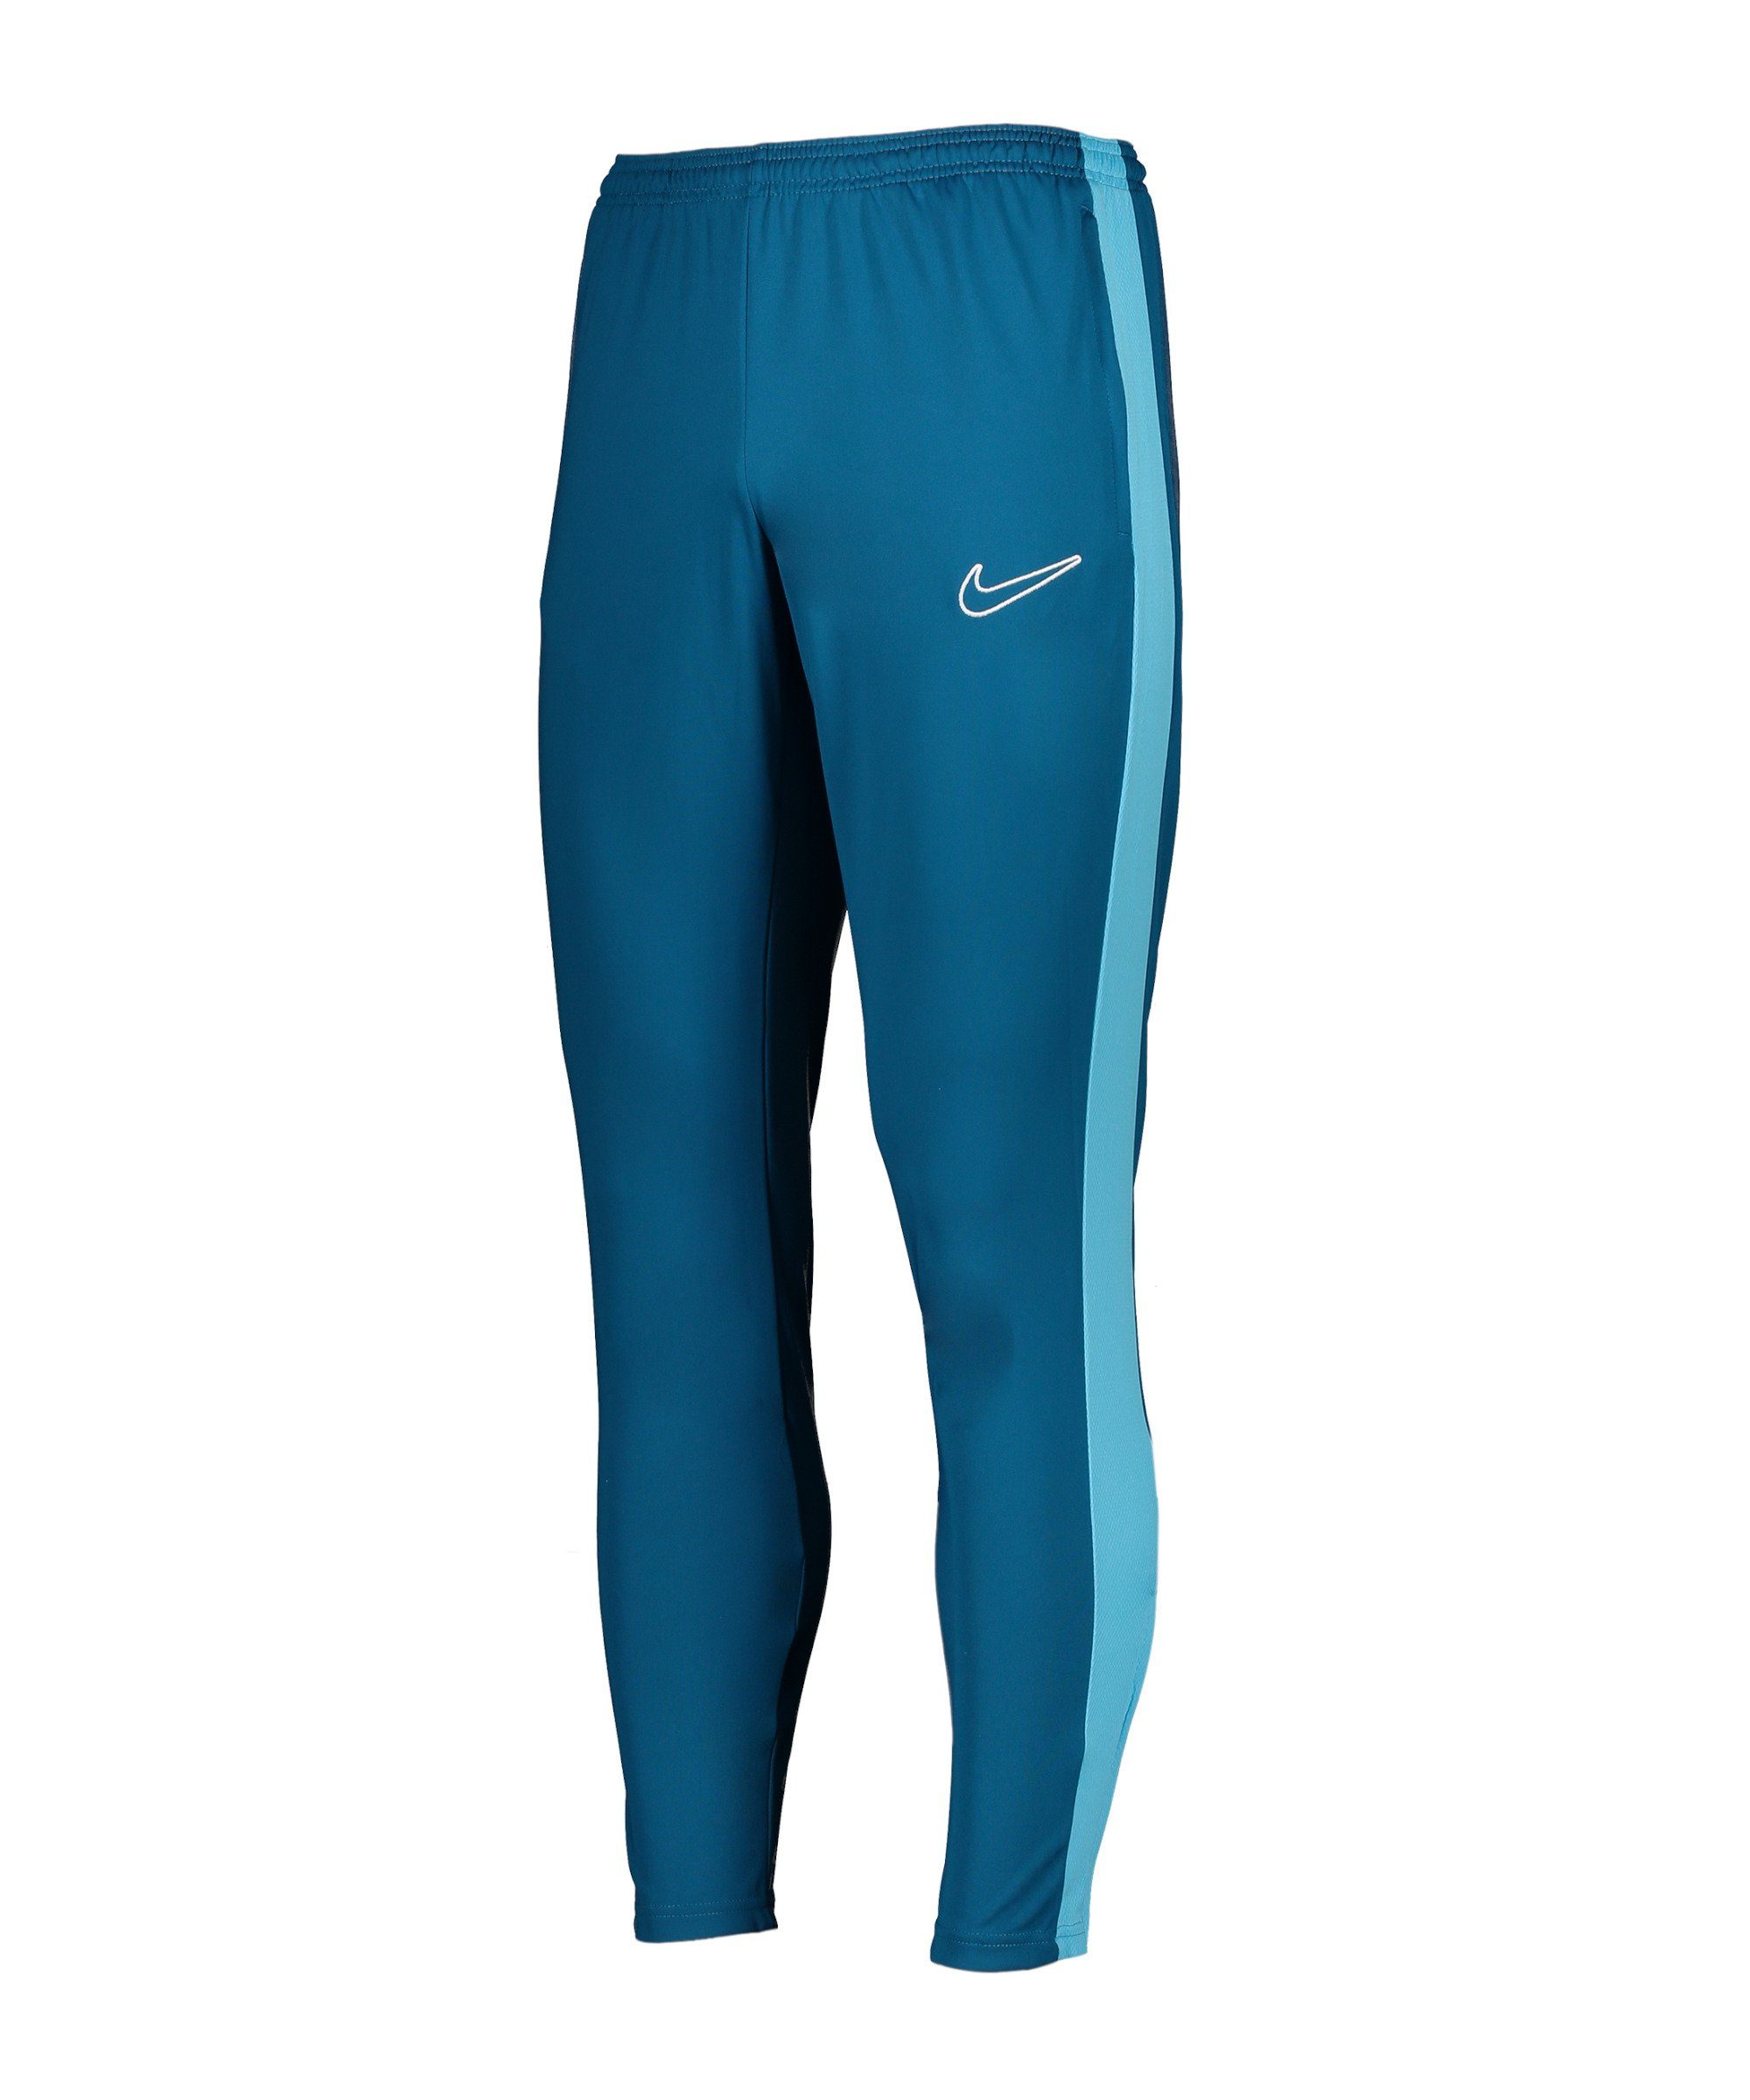 Nike Sporthose Academy Trainingshose gruenblau